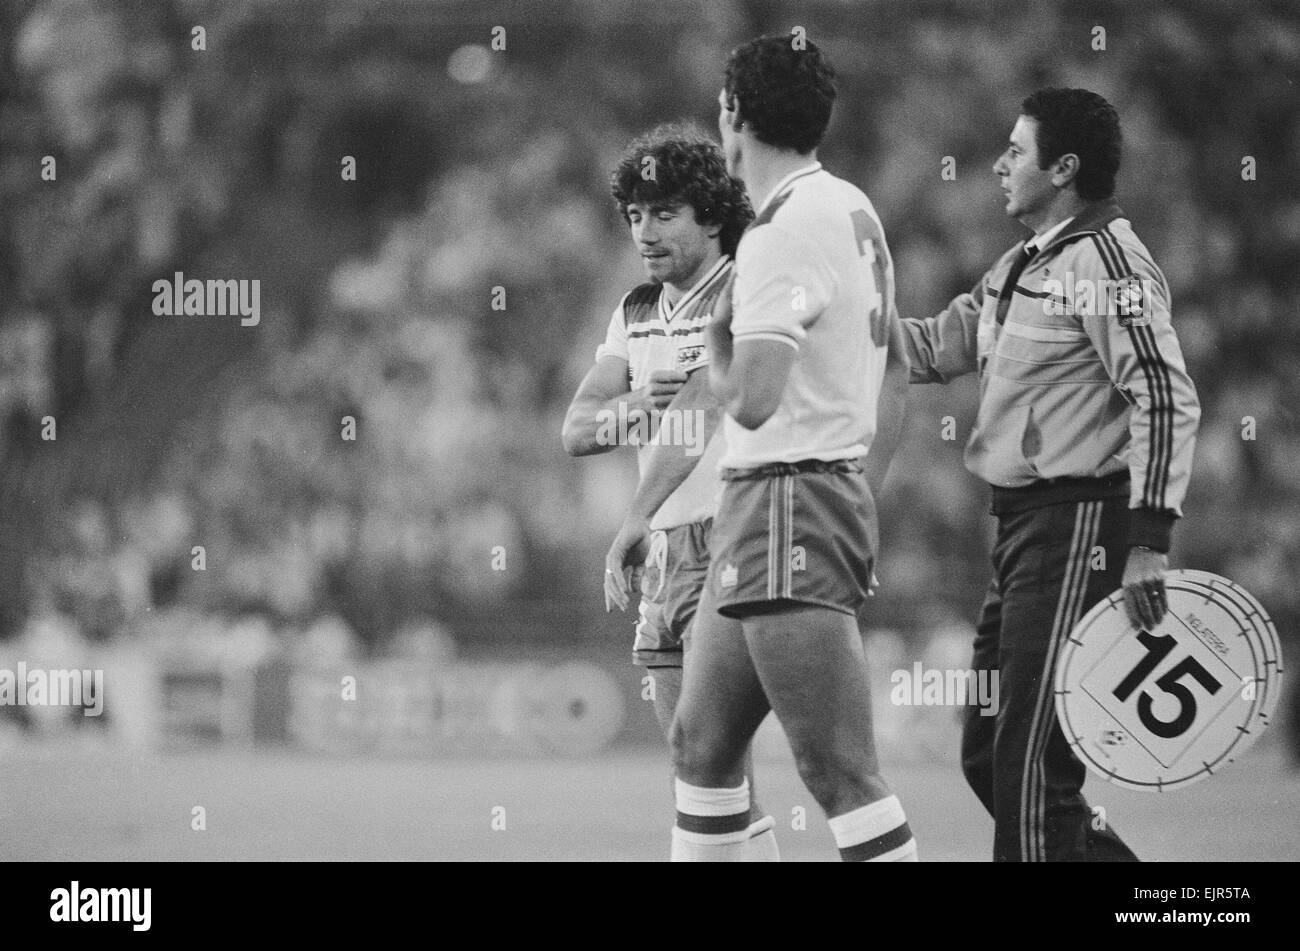 1982 World Cup Finale zweite Runde Gruppe B entsprechen in Madrid, Spanien. Spanien 0 V England 0. England ersetzt Trevor Brooking (rechts) und Kevin Keegan warten auf das Spielfeld kommen. 29. Juni 1982. Stockfoto